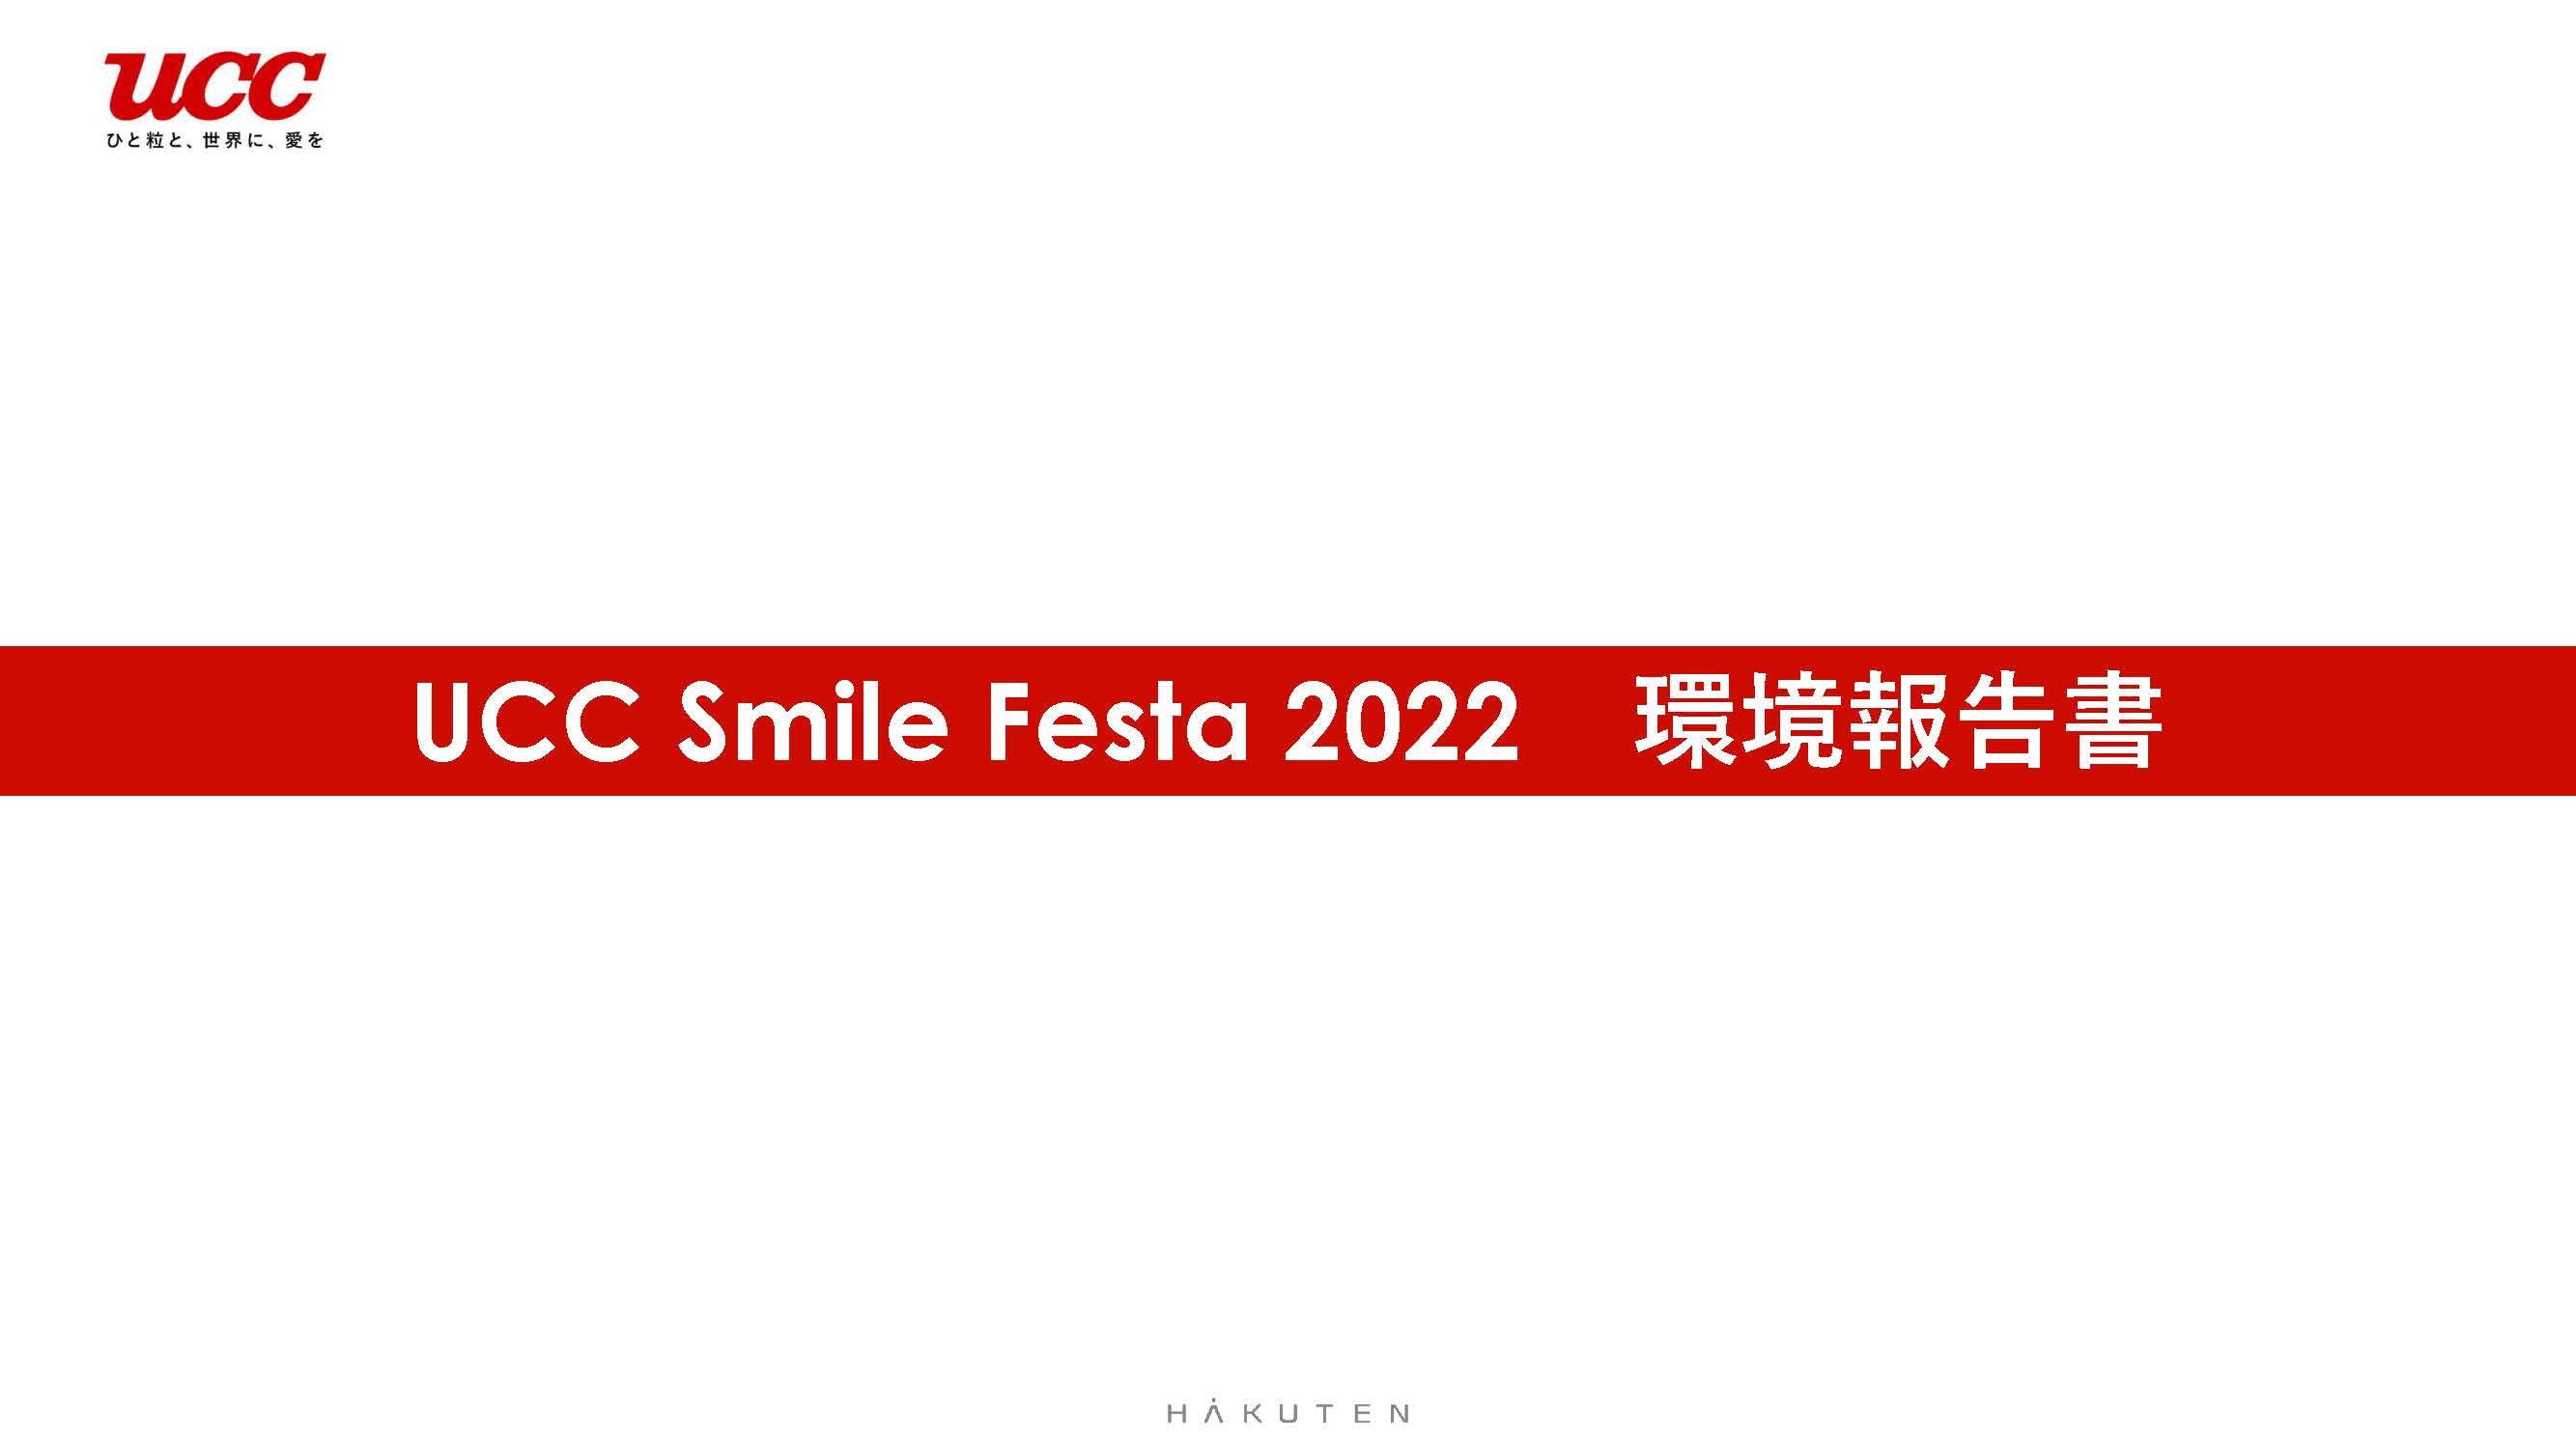 ucc smile festa 2022